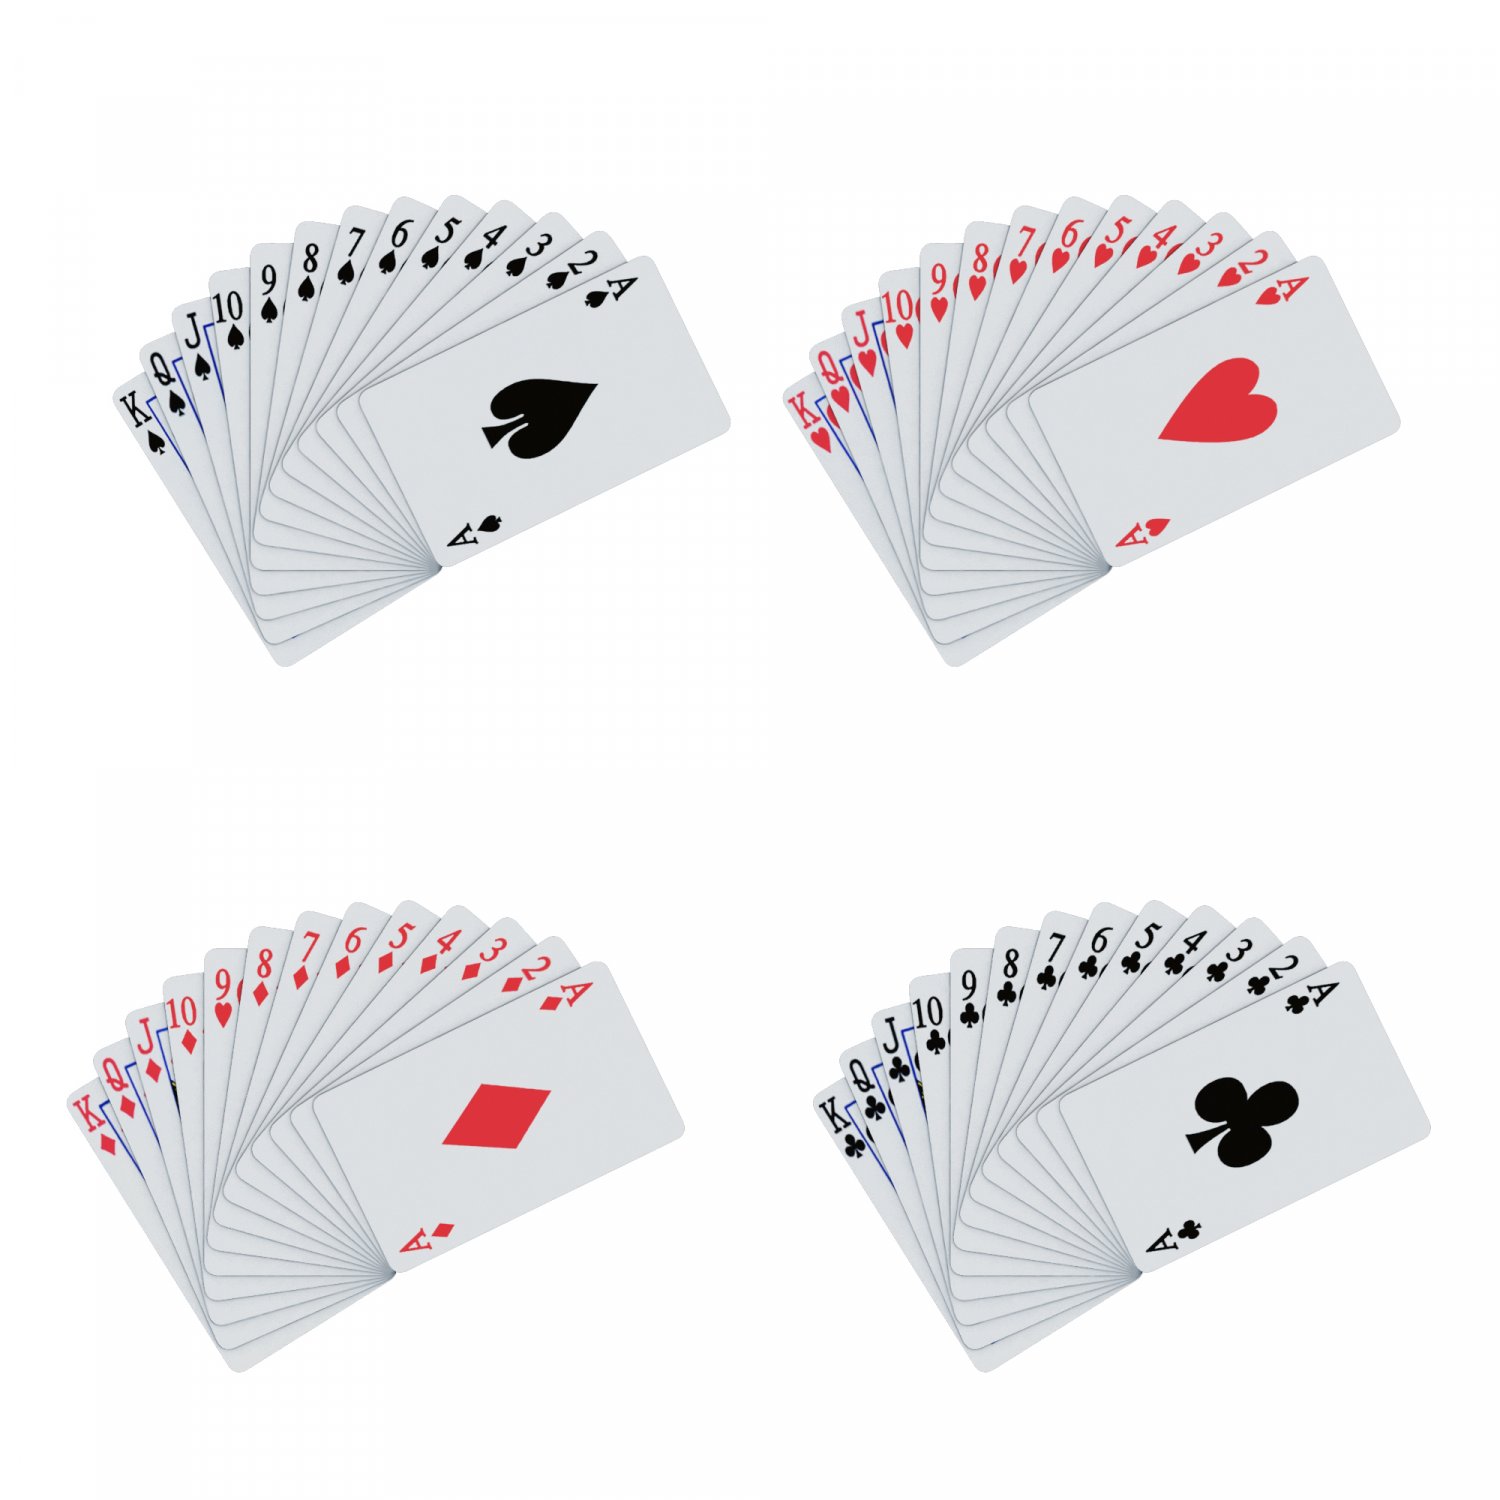 Card 3d model. Игральные карты 3д модель. 3d модель игральных карт. Коробка для игральных карт 3д модель. 3д модель карты.